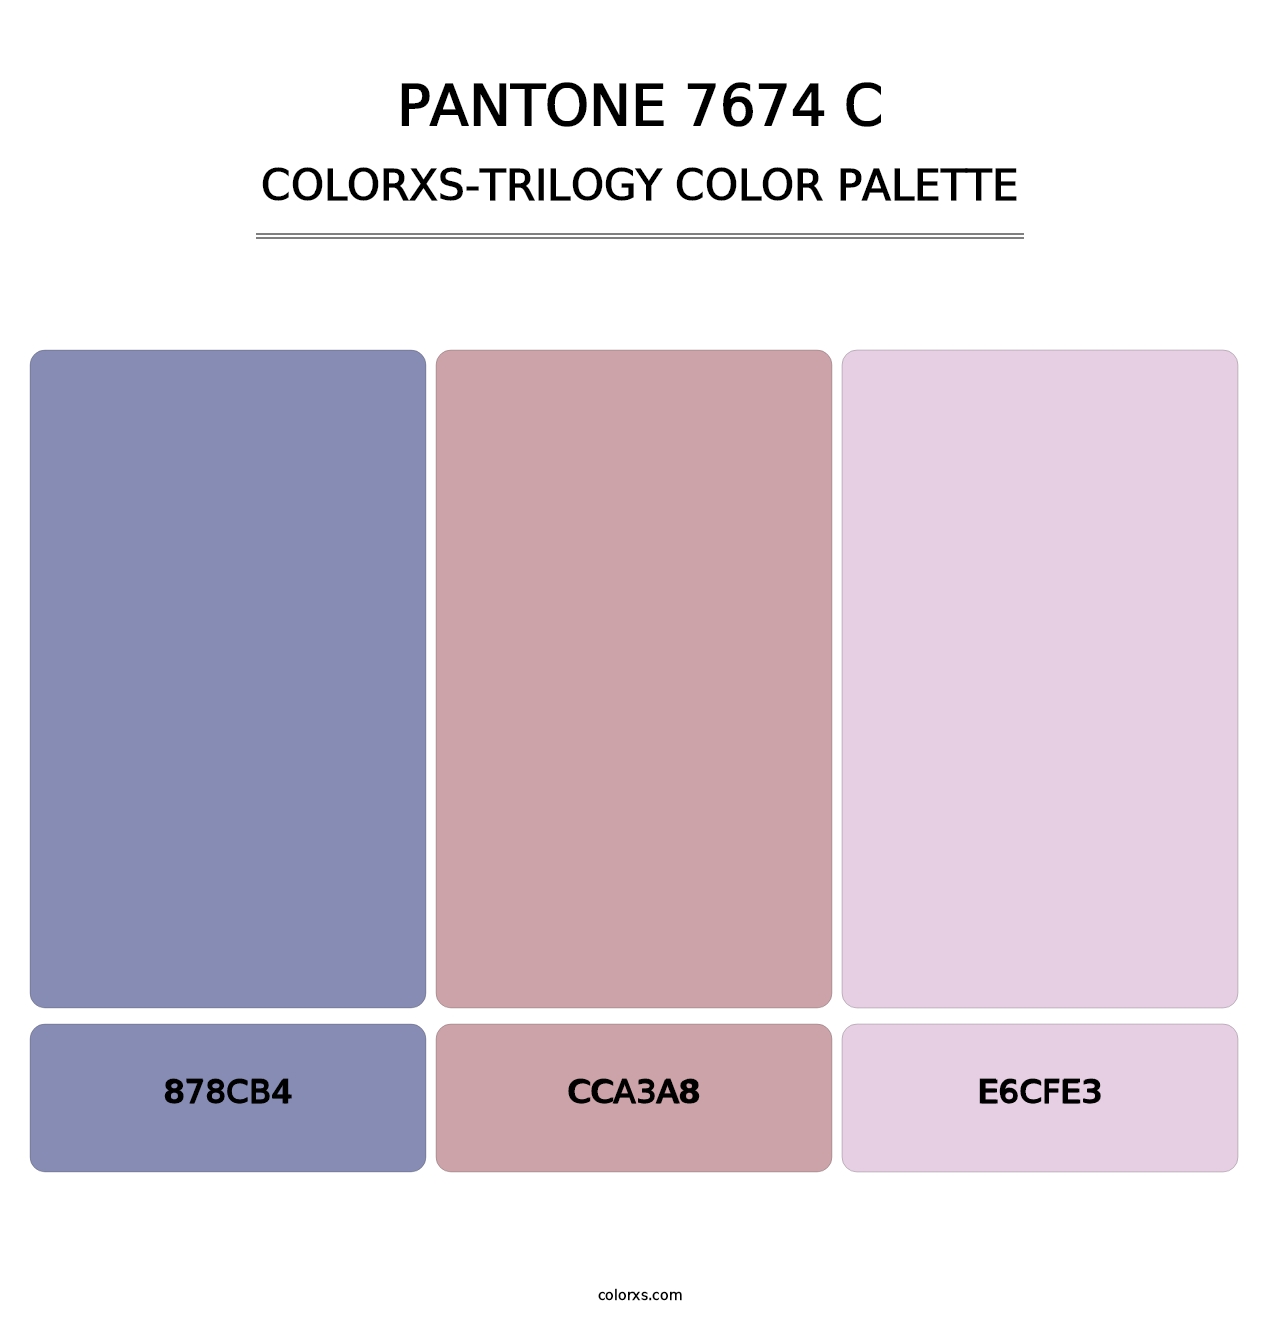 PANTONE 7674 C - Colorxs Trilogy Palette